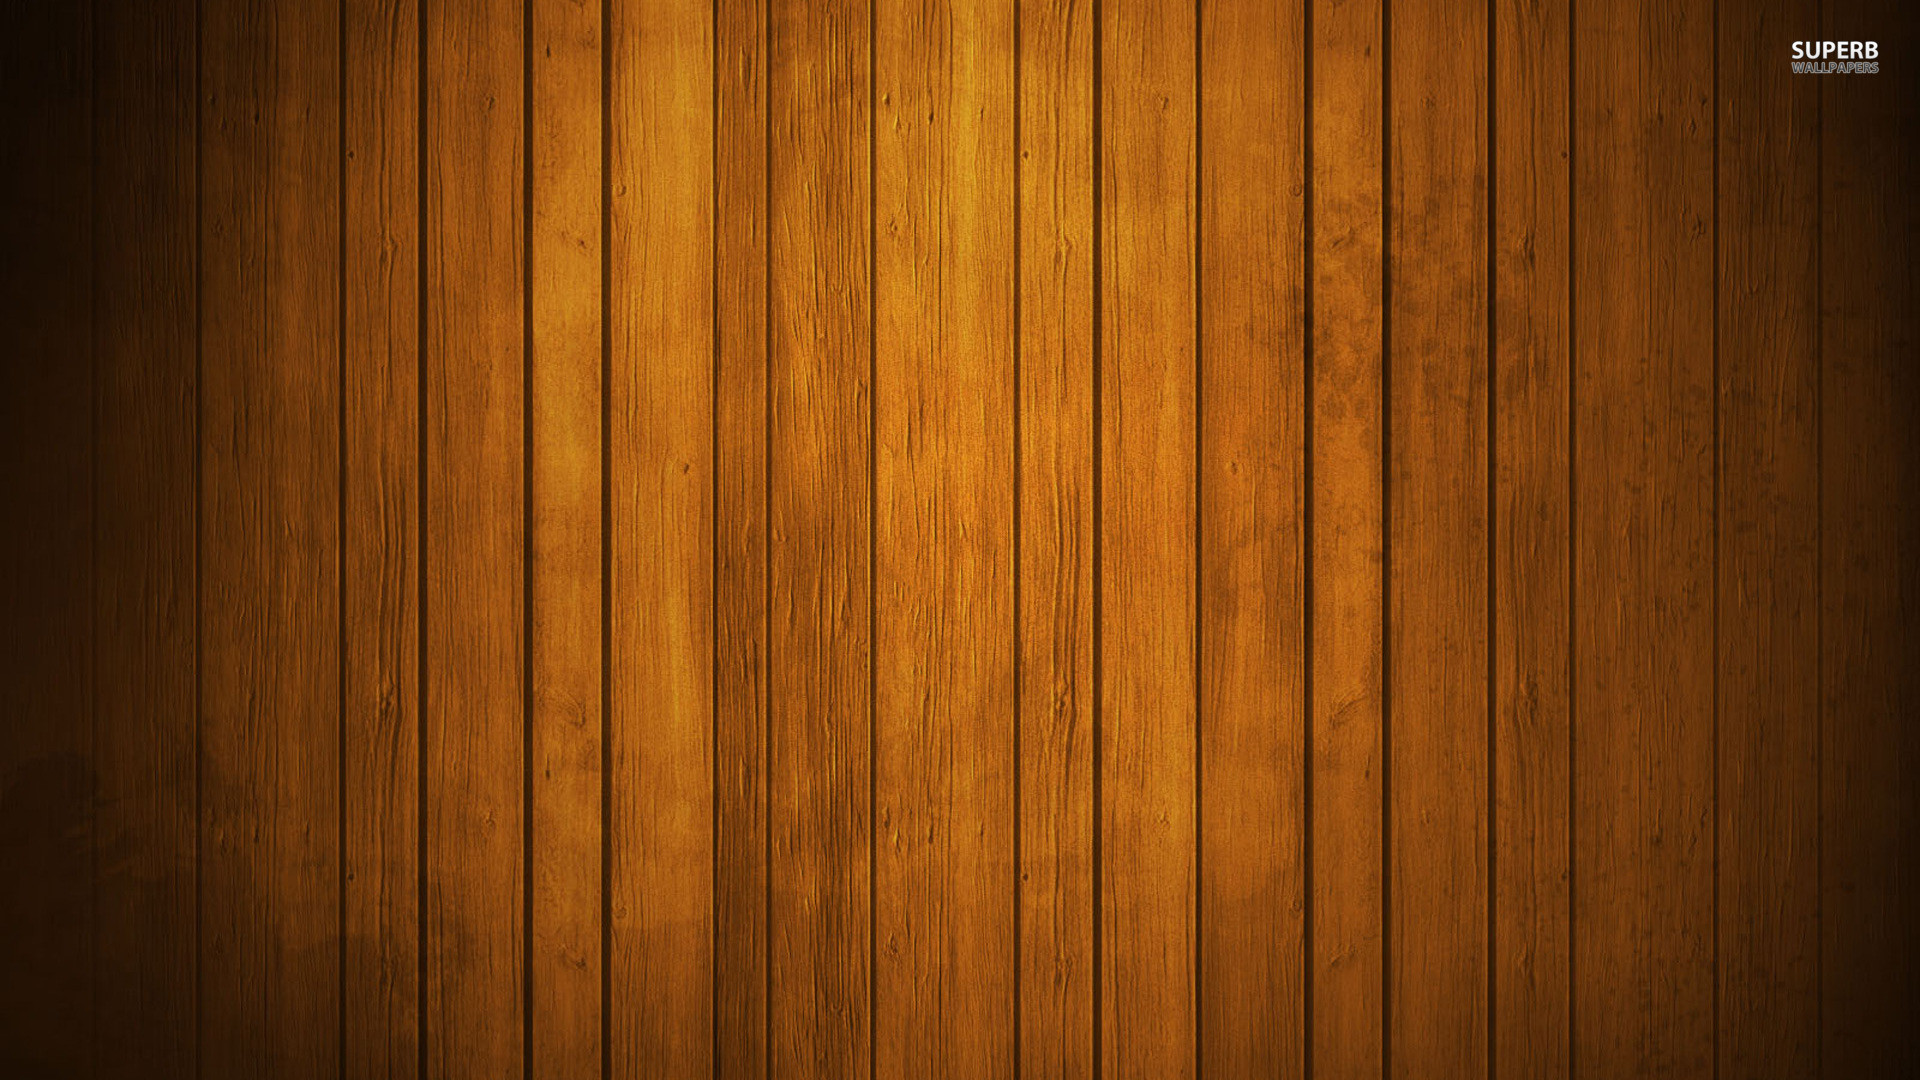 1920x1080  Wallpaper Wood Wallpaper 182 Wood HD Wallpapers | Backgrounds -  Wallpaper Abyss Full HD 1080p ...